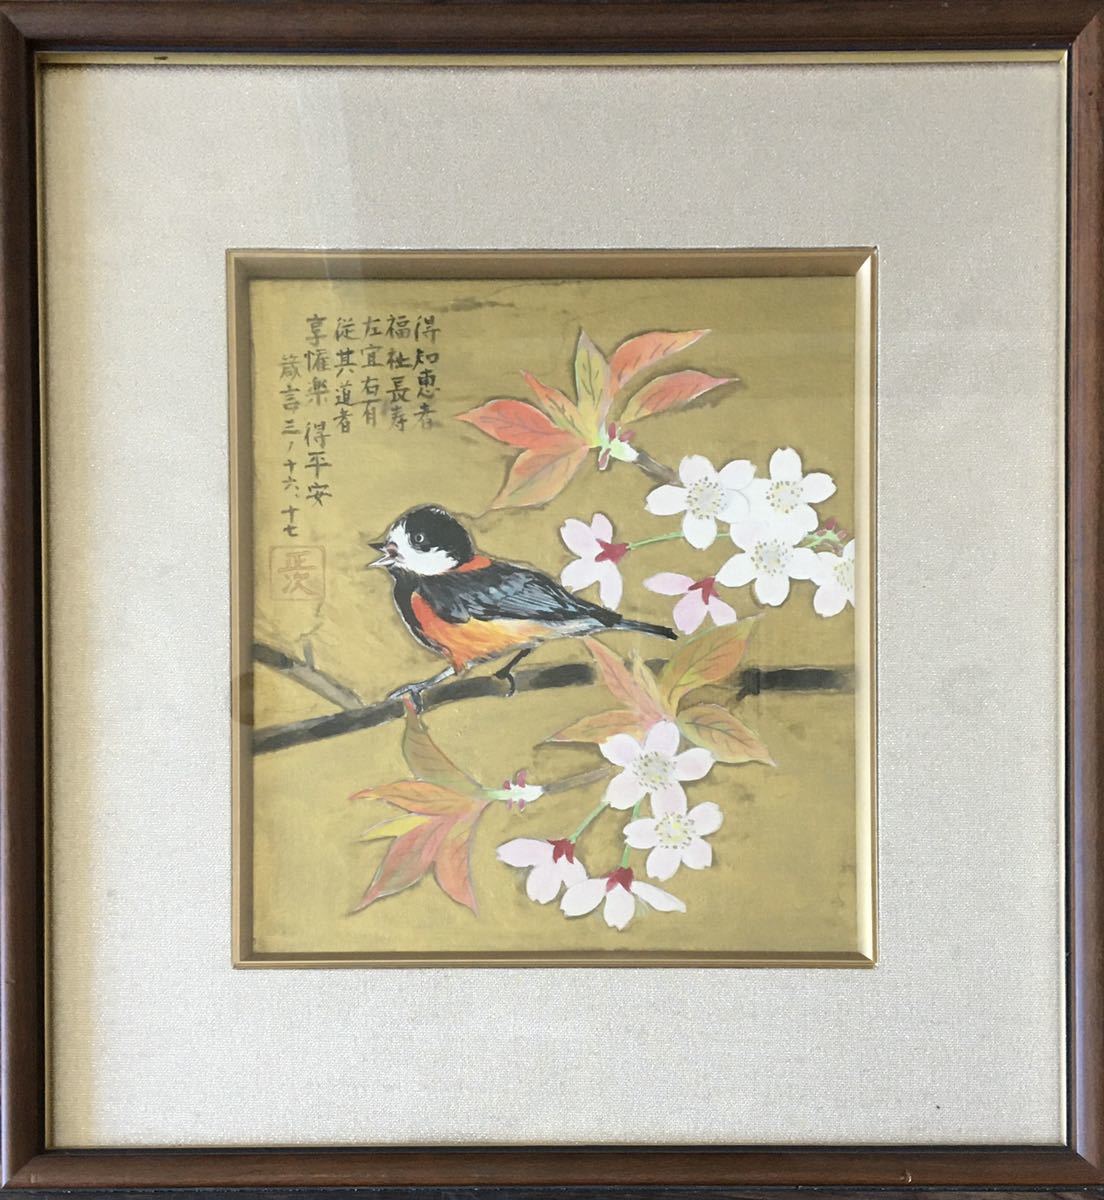 日本画 印有り 正次 額装 花鳥図 画賛 桜 絵画 色紙 J-17_画像1